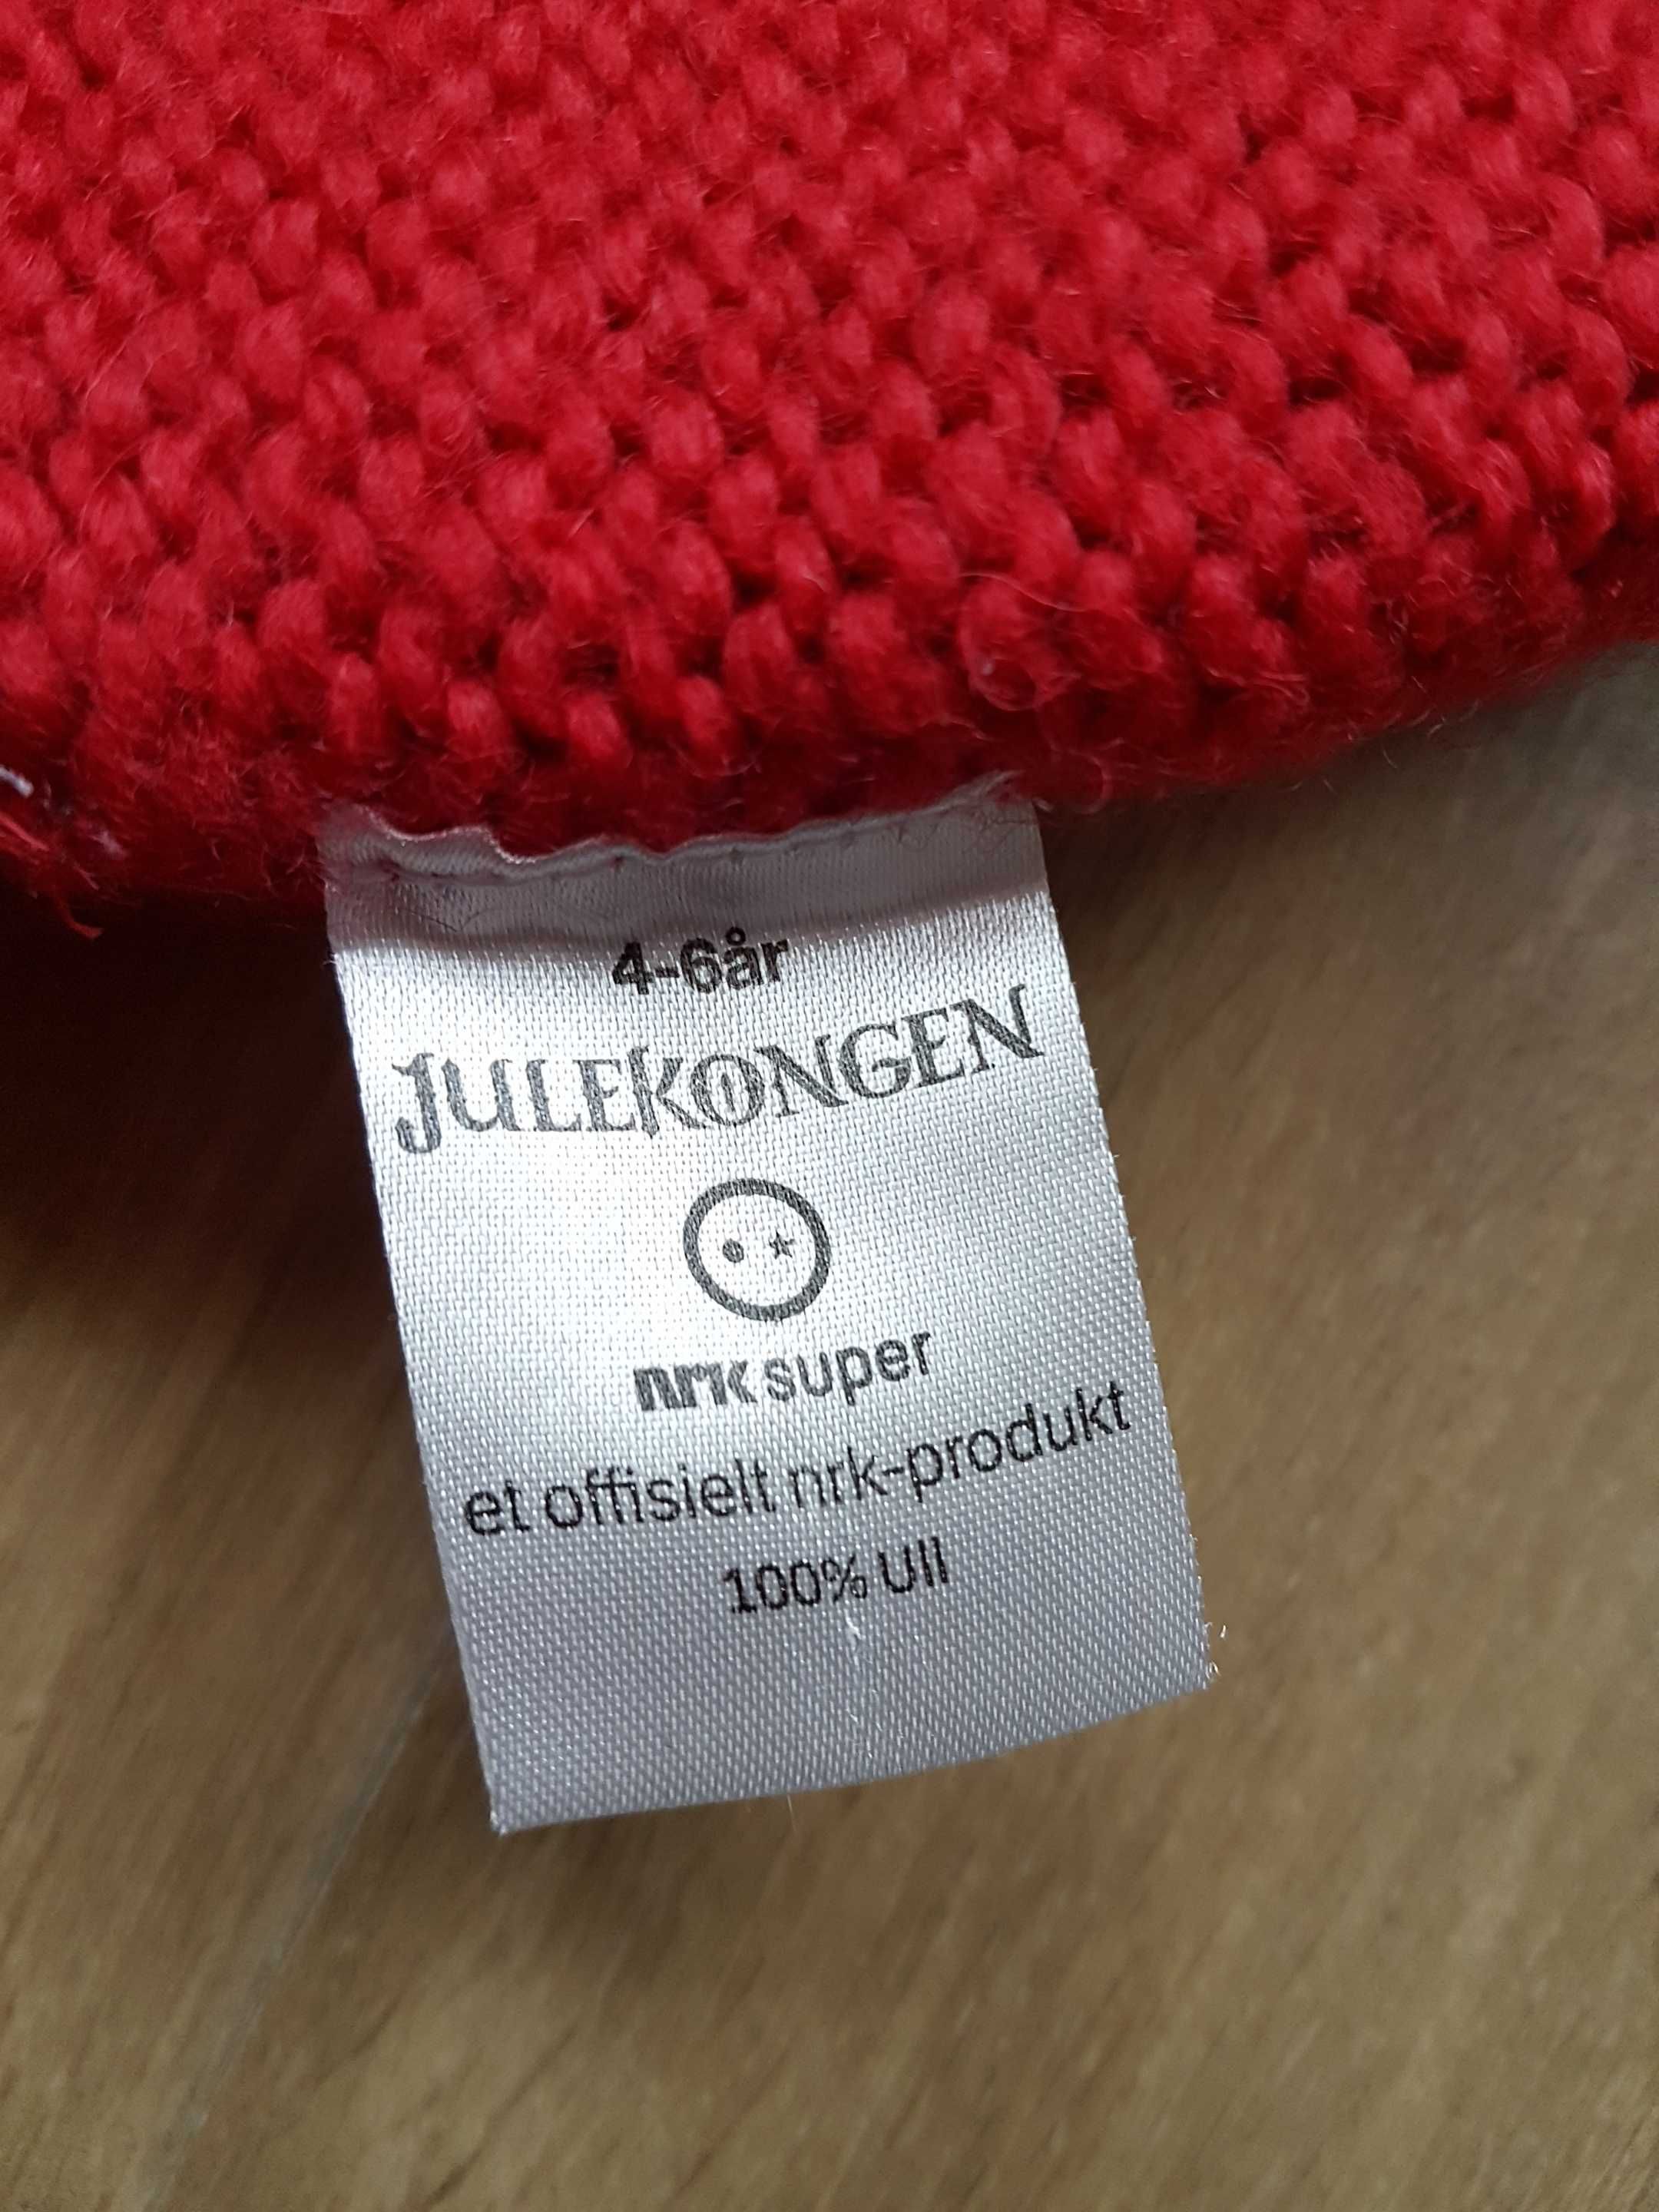 JANUS JULEKONGEN czerwona czapka 4-6 lat 100% wełna + rękawiczki